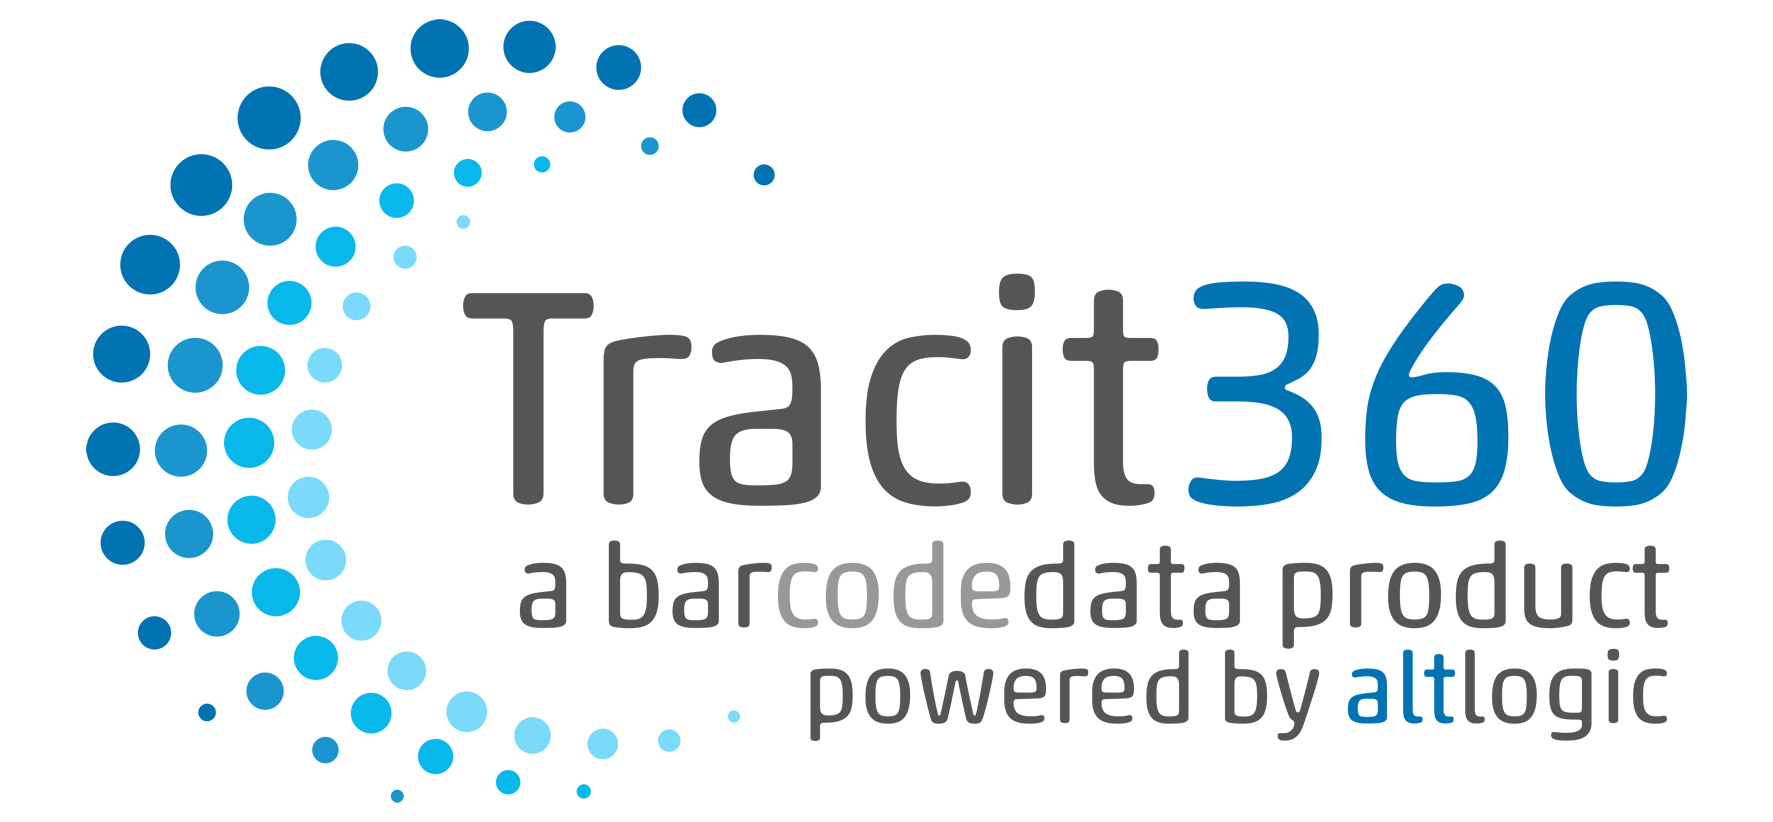 Tracit360 Barcode Data Logo